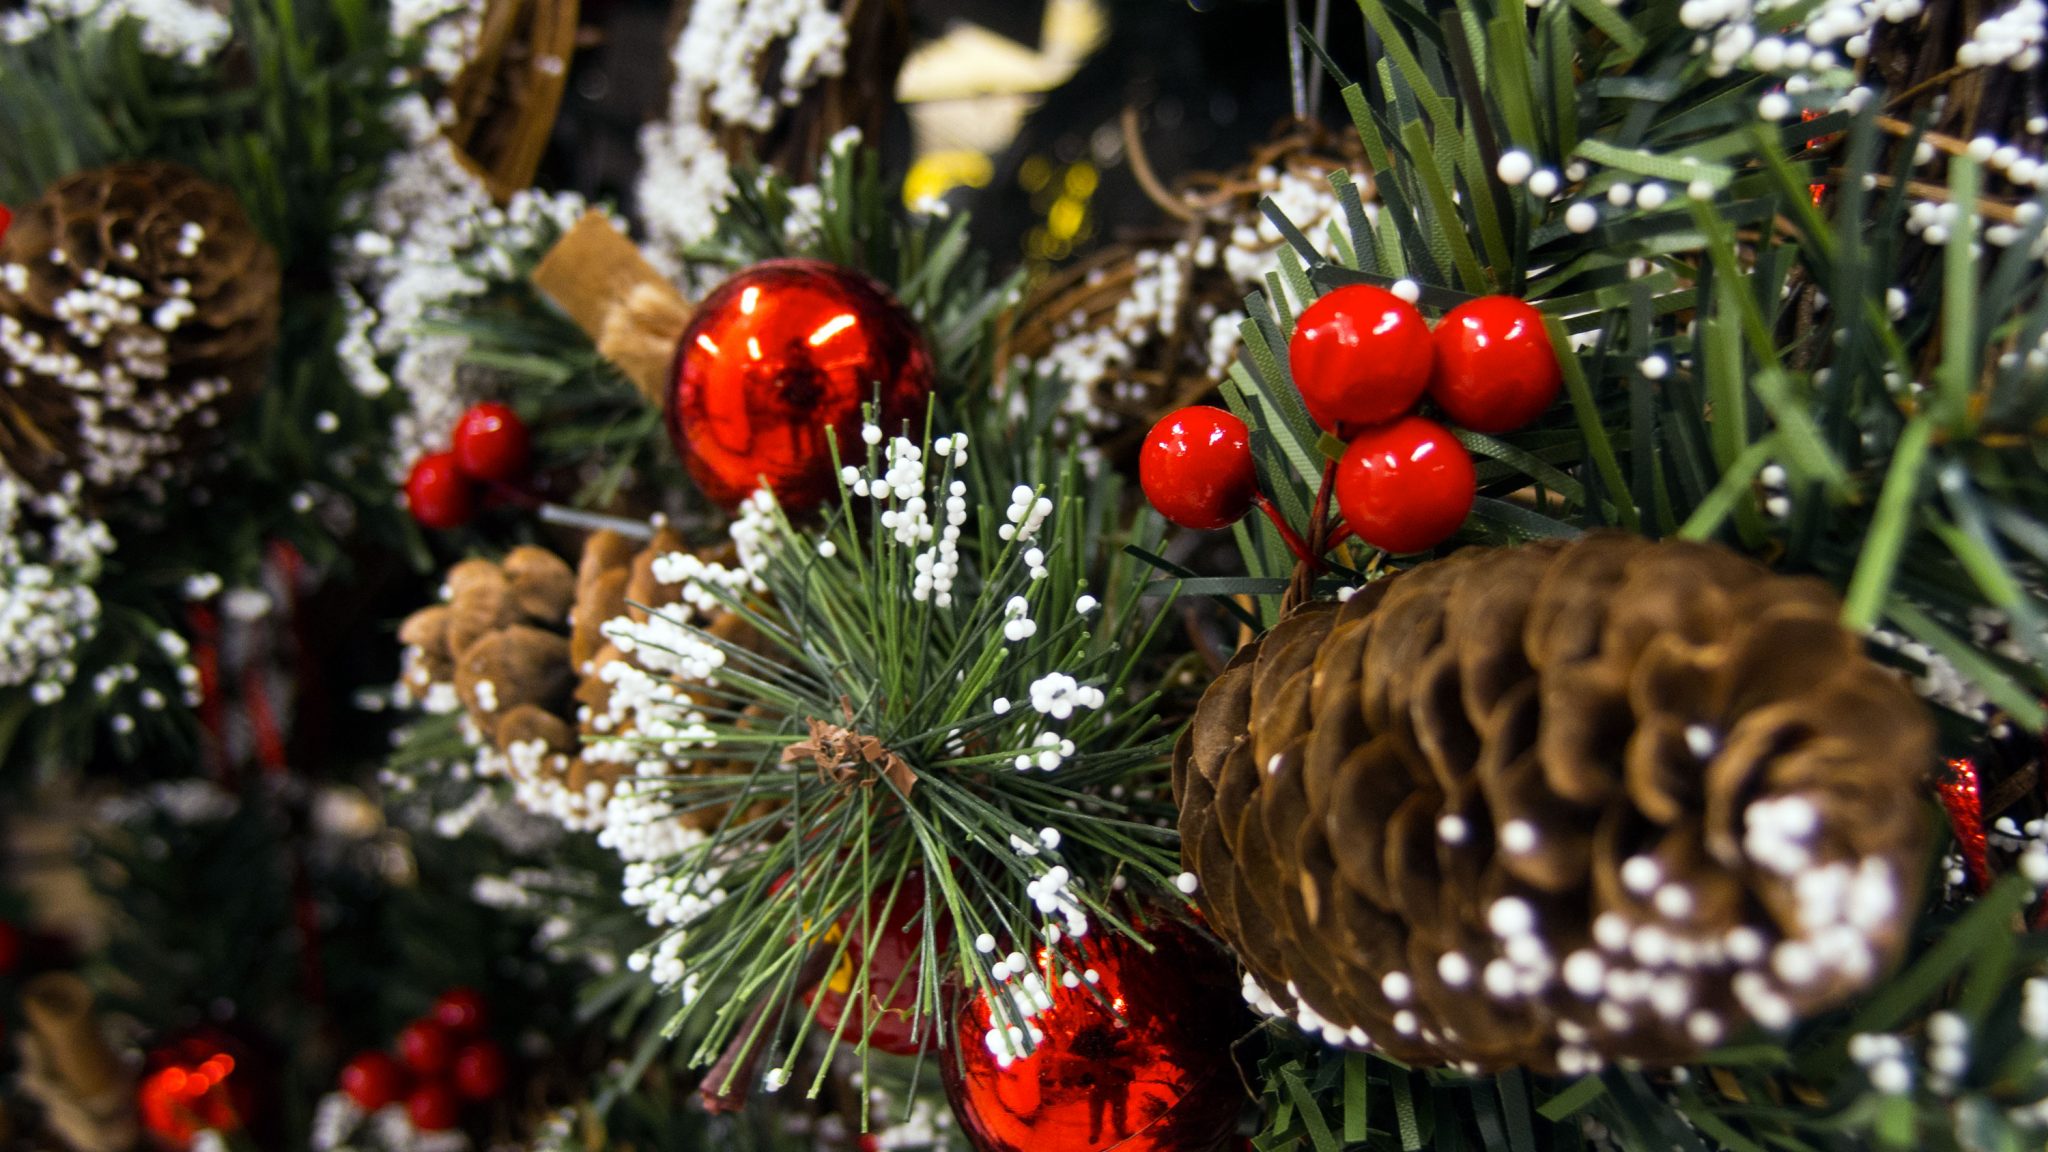 We zullen met minder rond de kerstboom zitten dan ooit tevoren. ©Pixabay